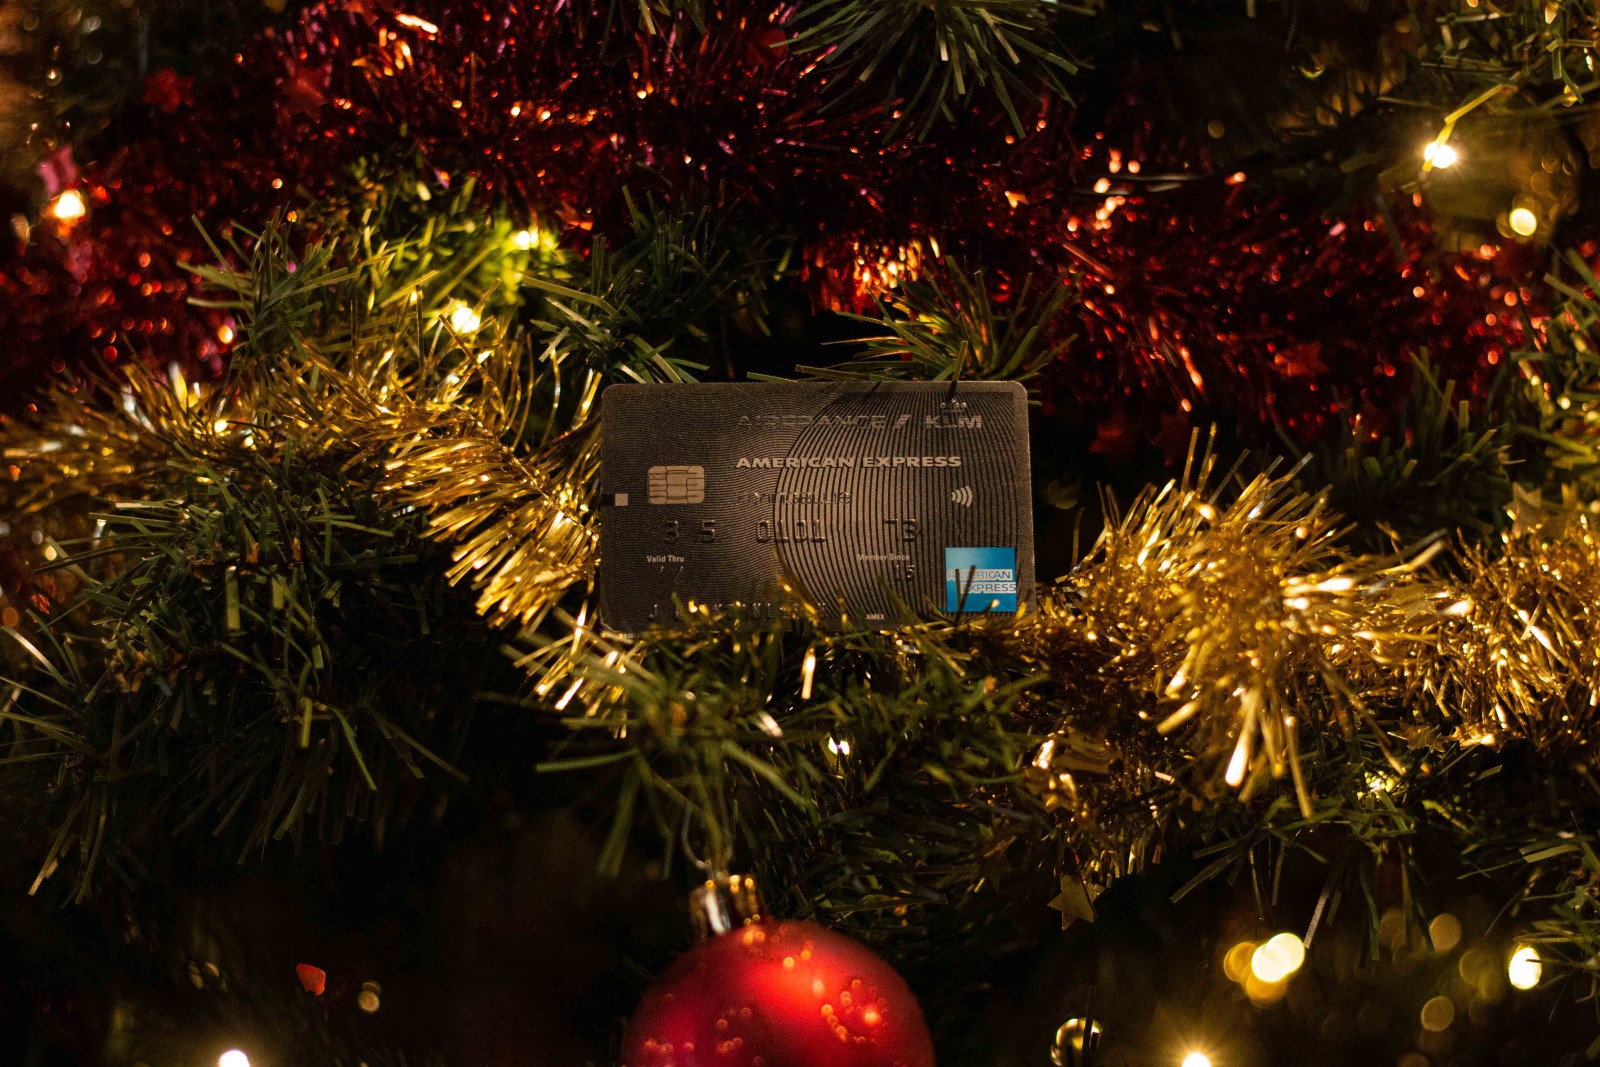 Kerstcadeaus kopen met een creditcard